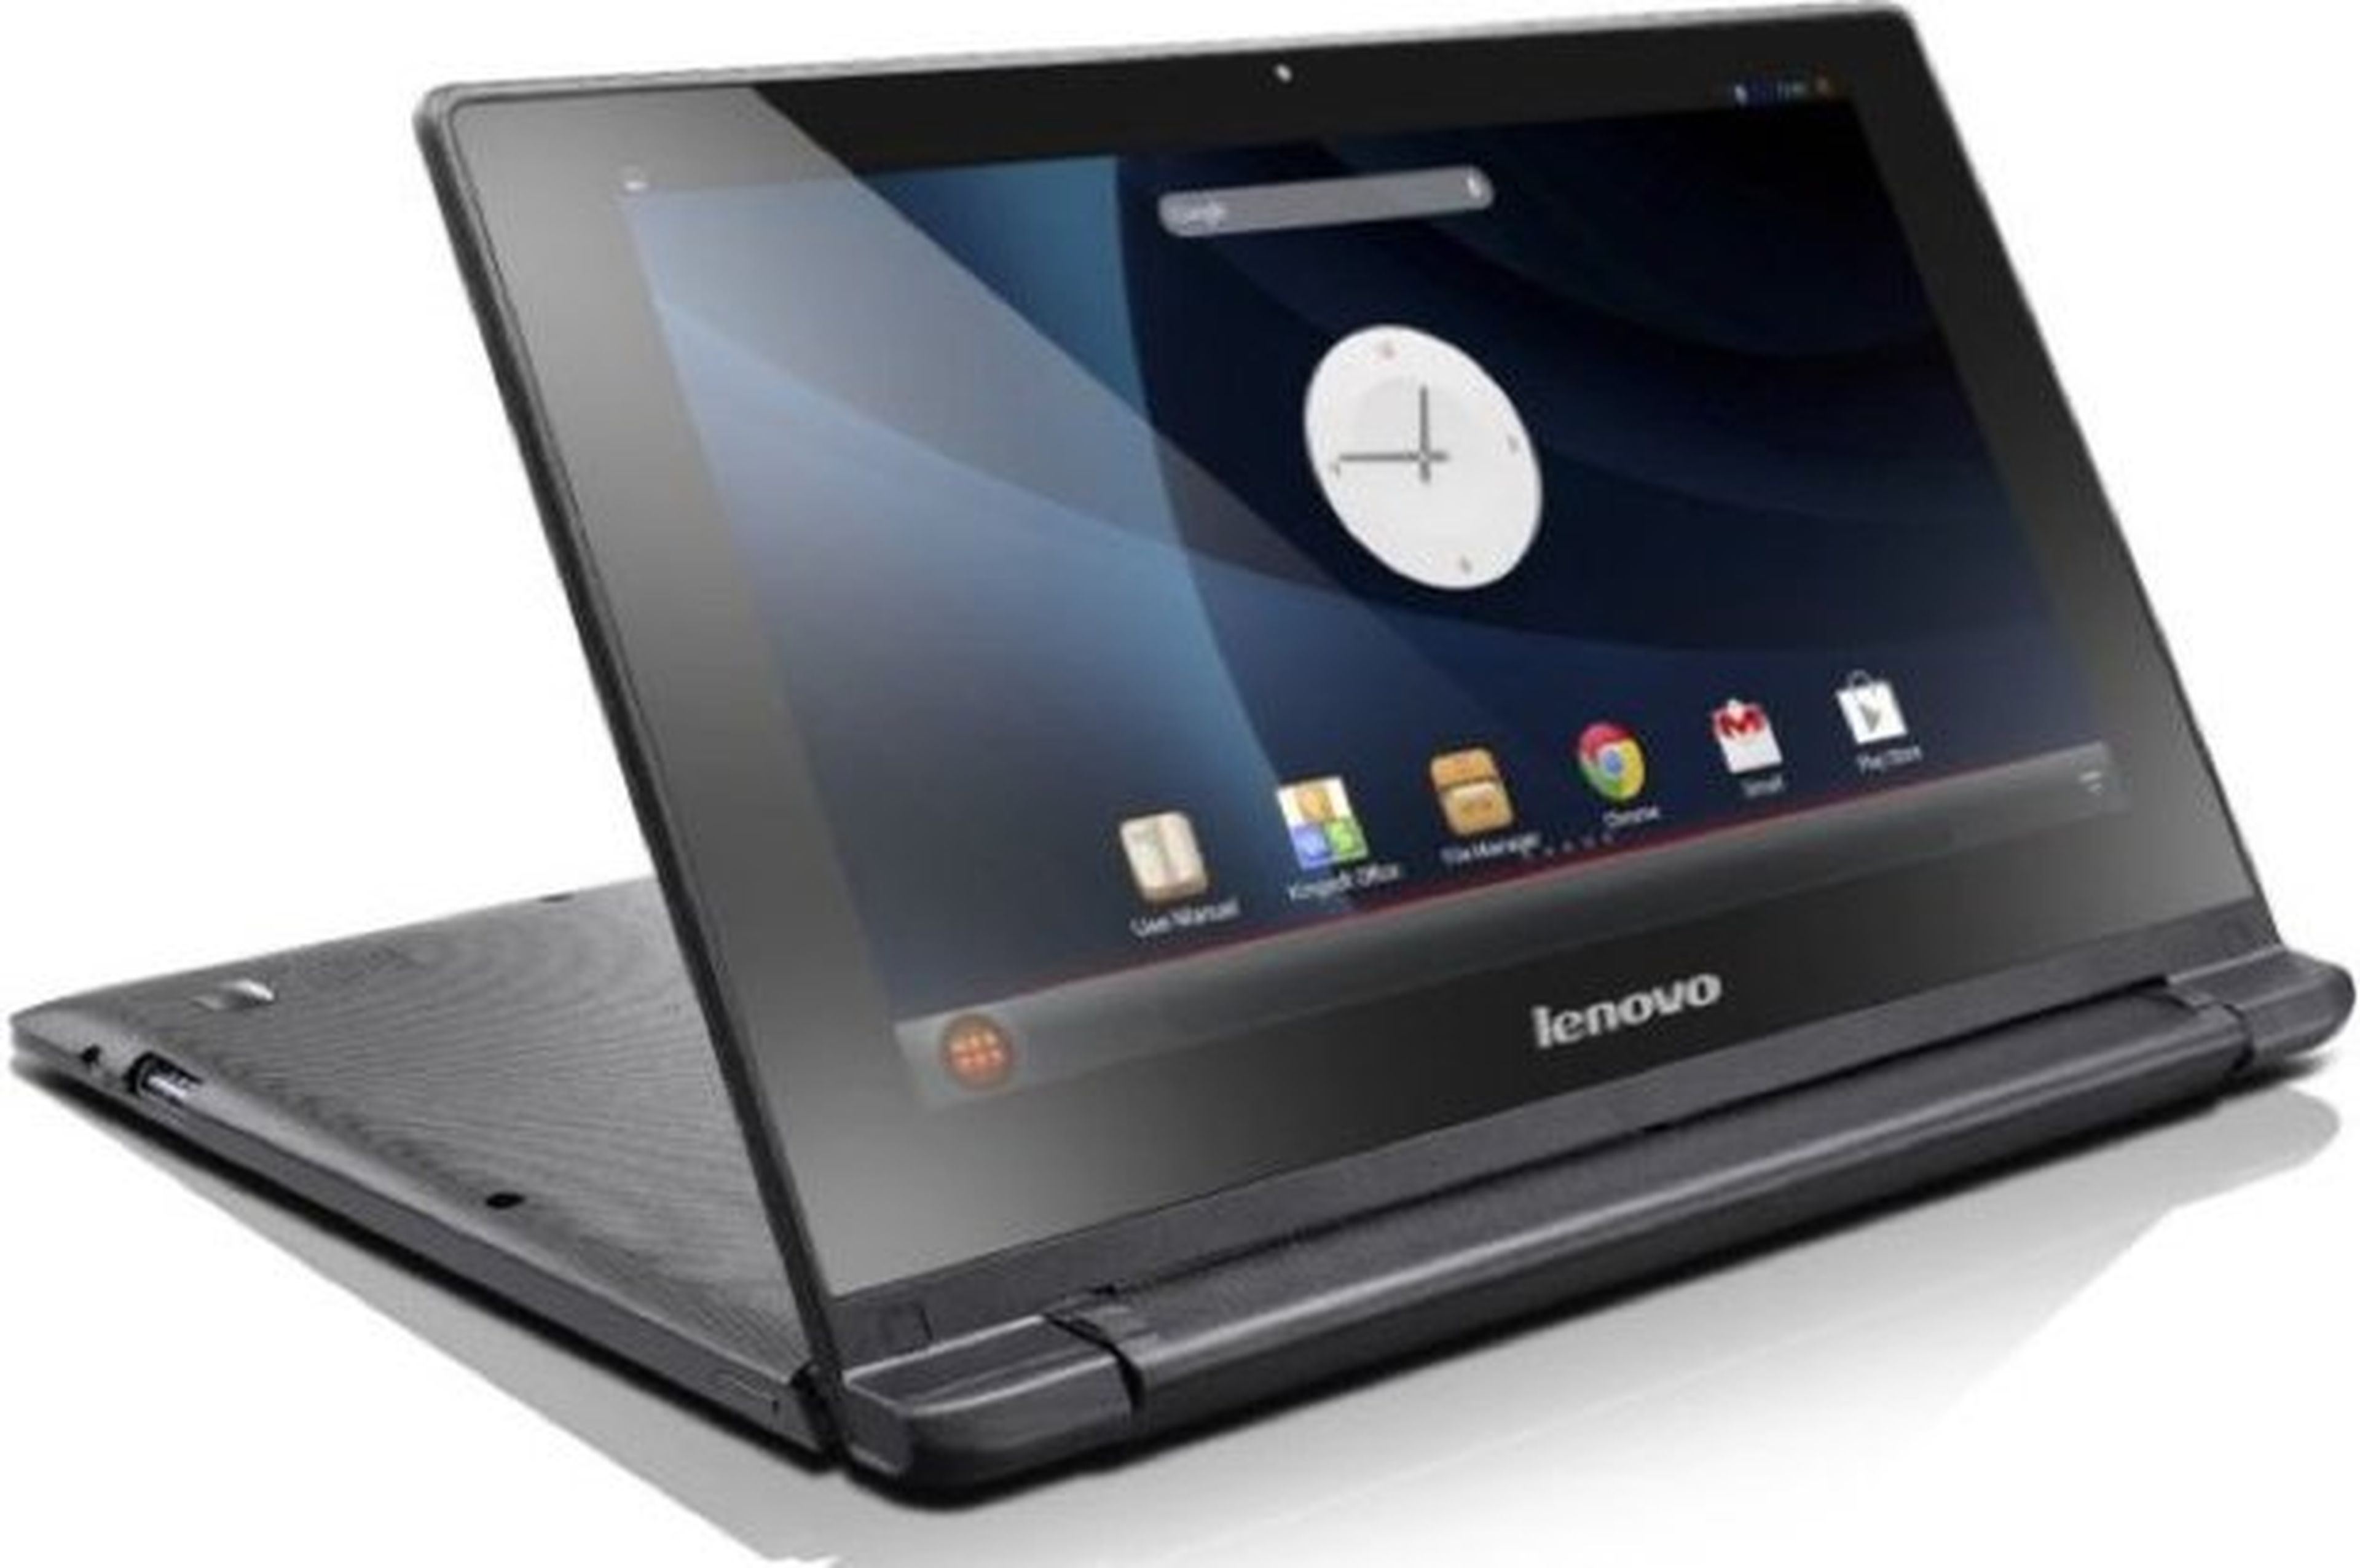 Manuales filtrados confirman nuevo Lenovo IdeaTab A10